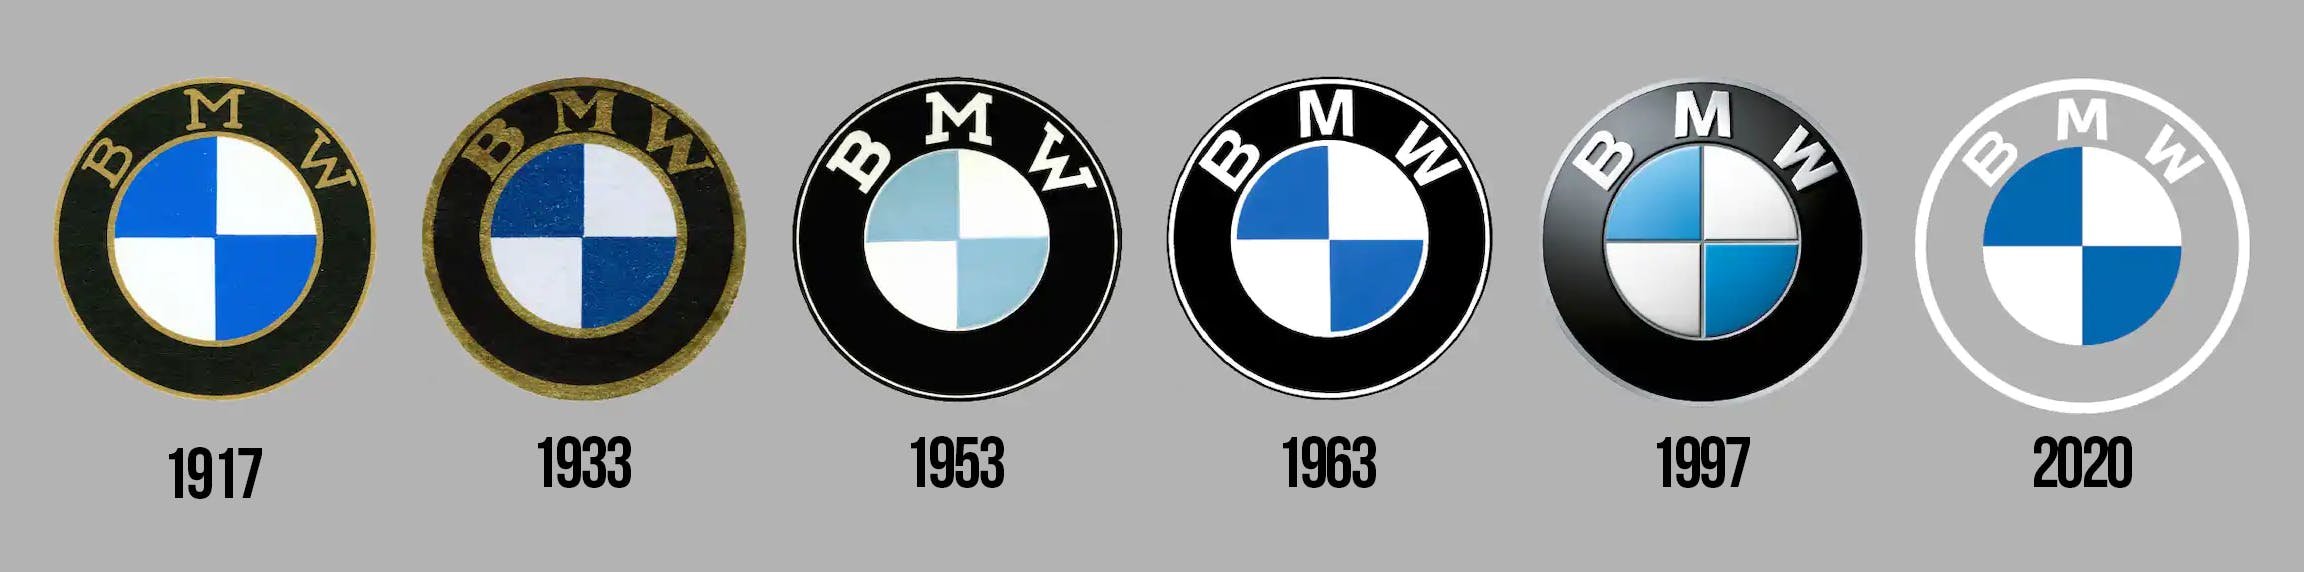 Эволюция логотипа BMW